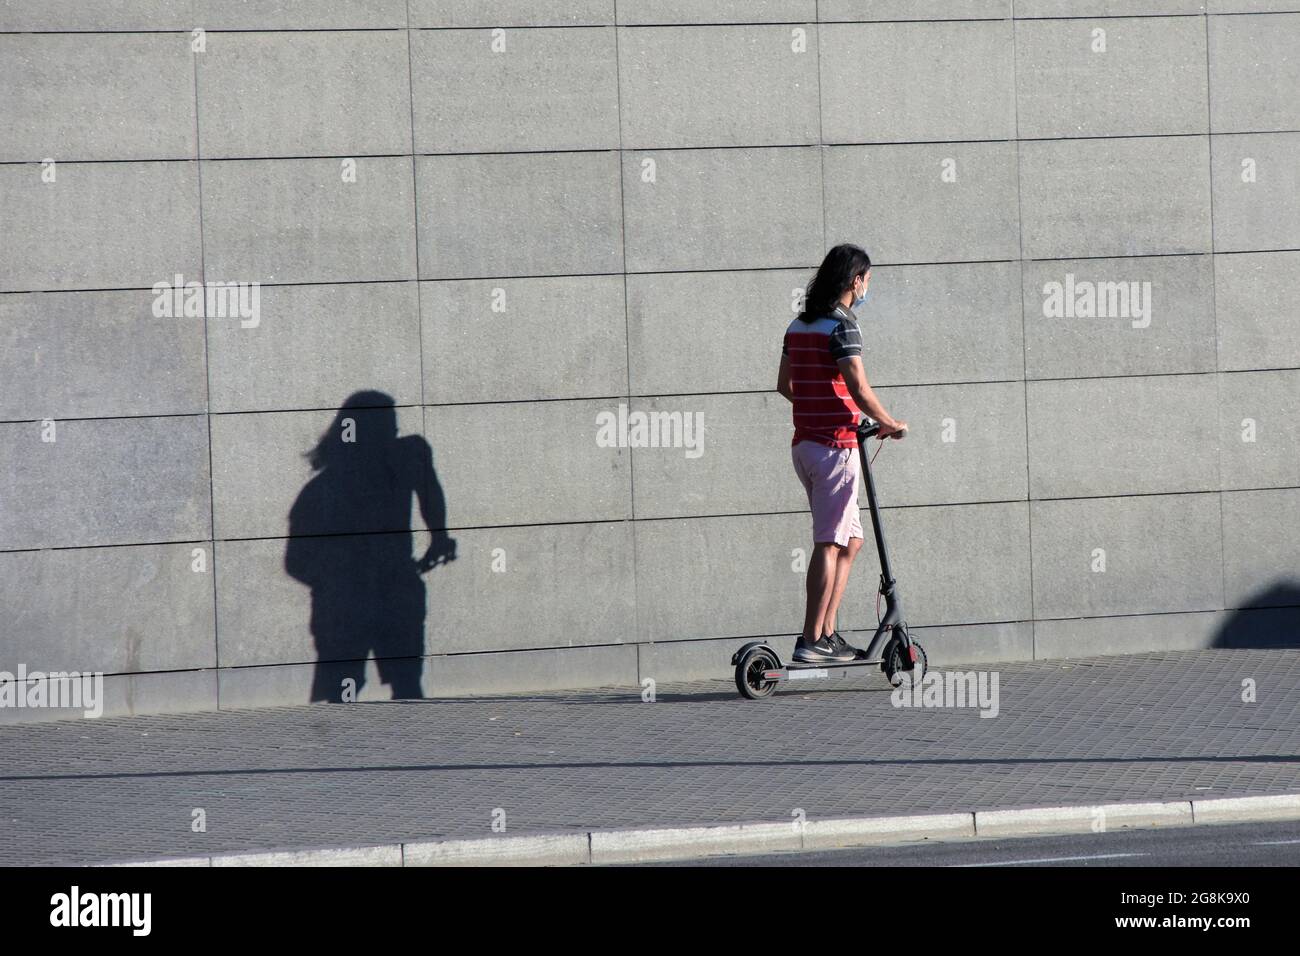 Il giovane guida uno scooter elettrico in una strada di una città. Foto Stock